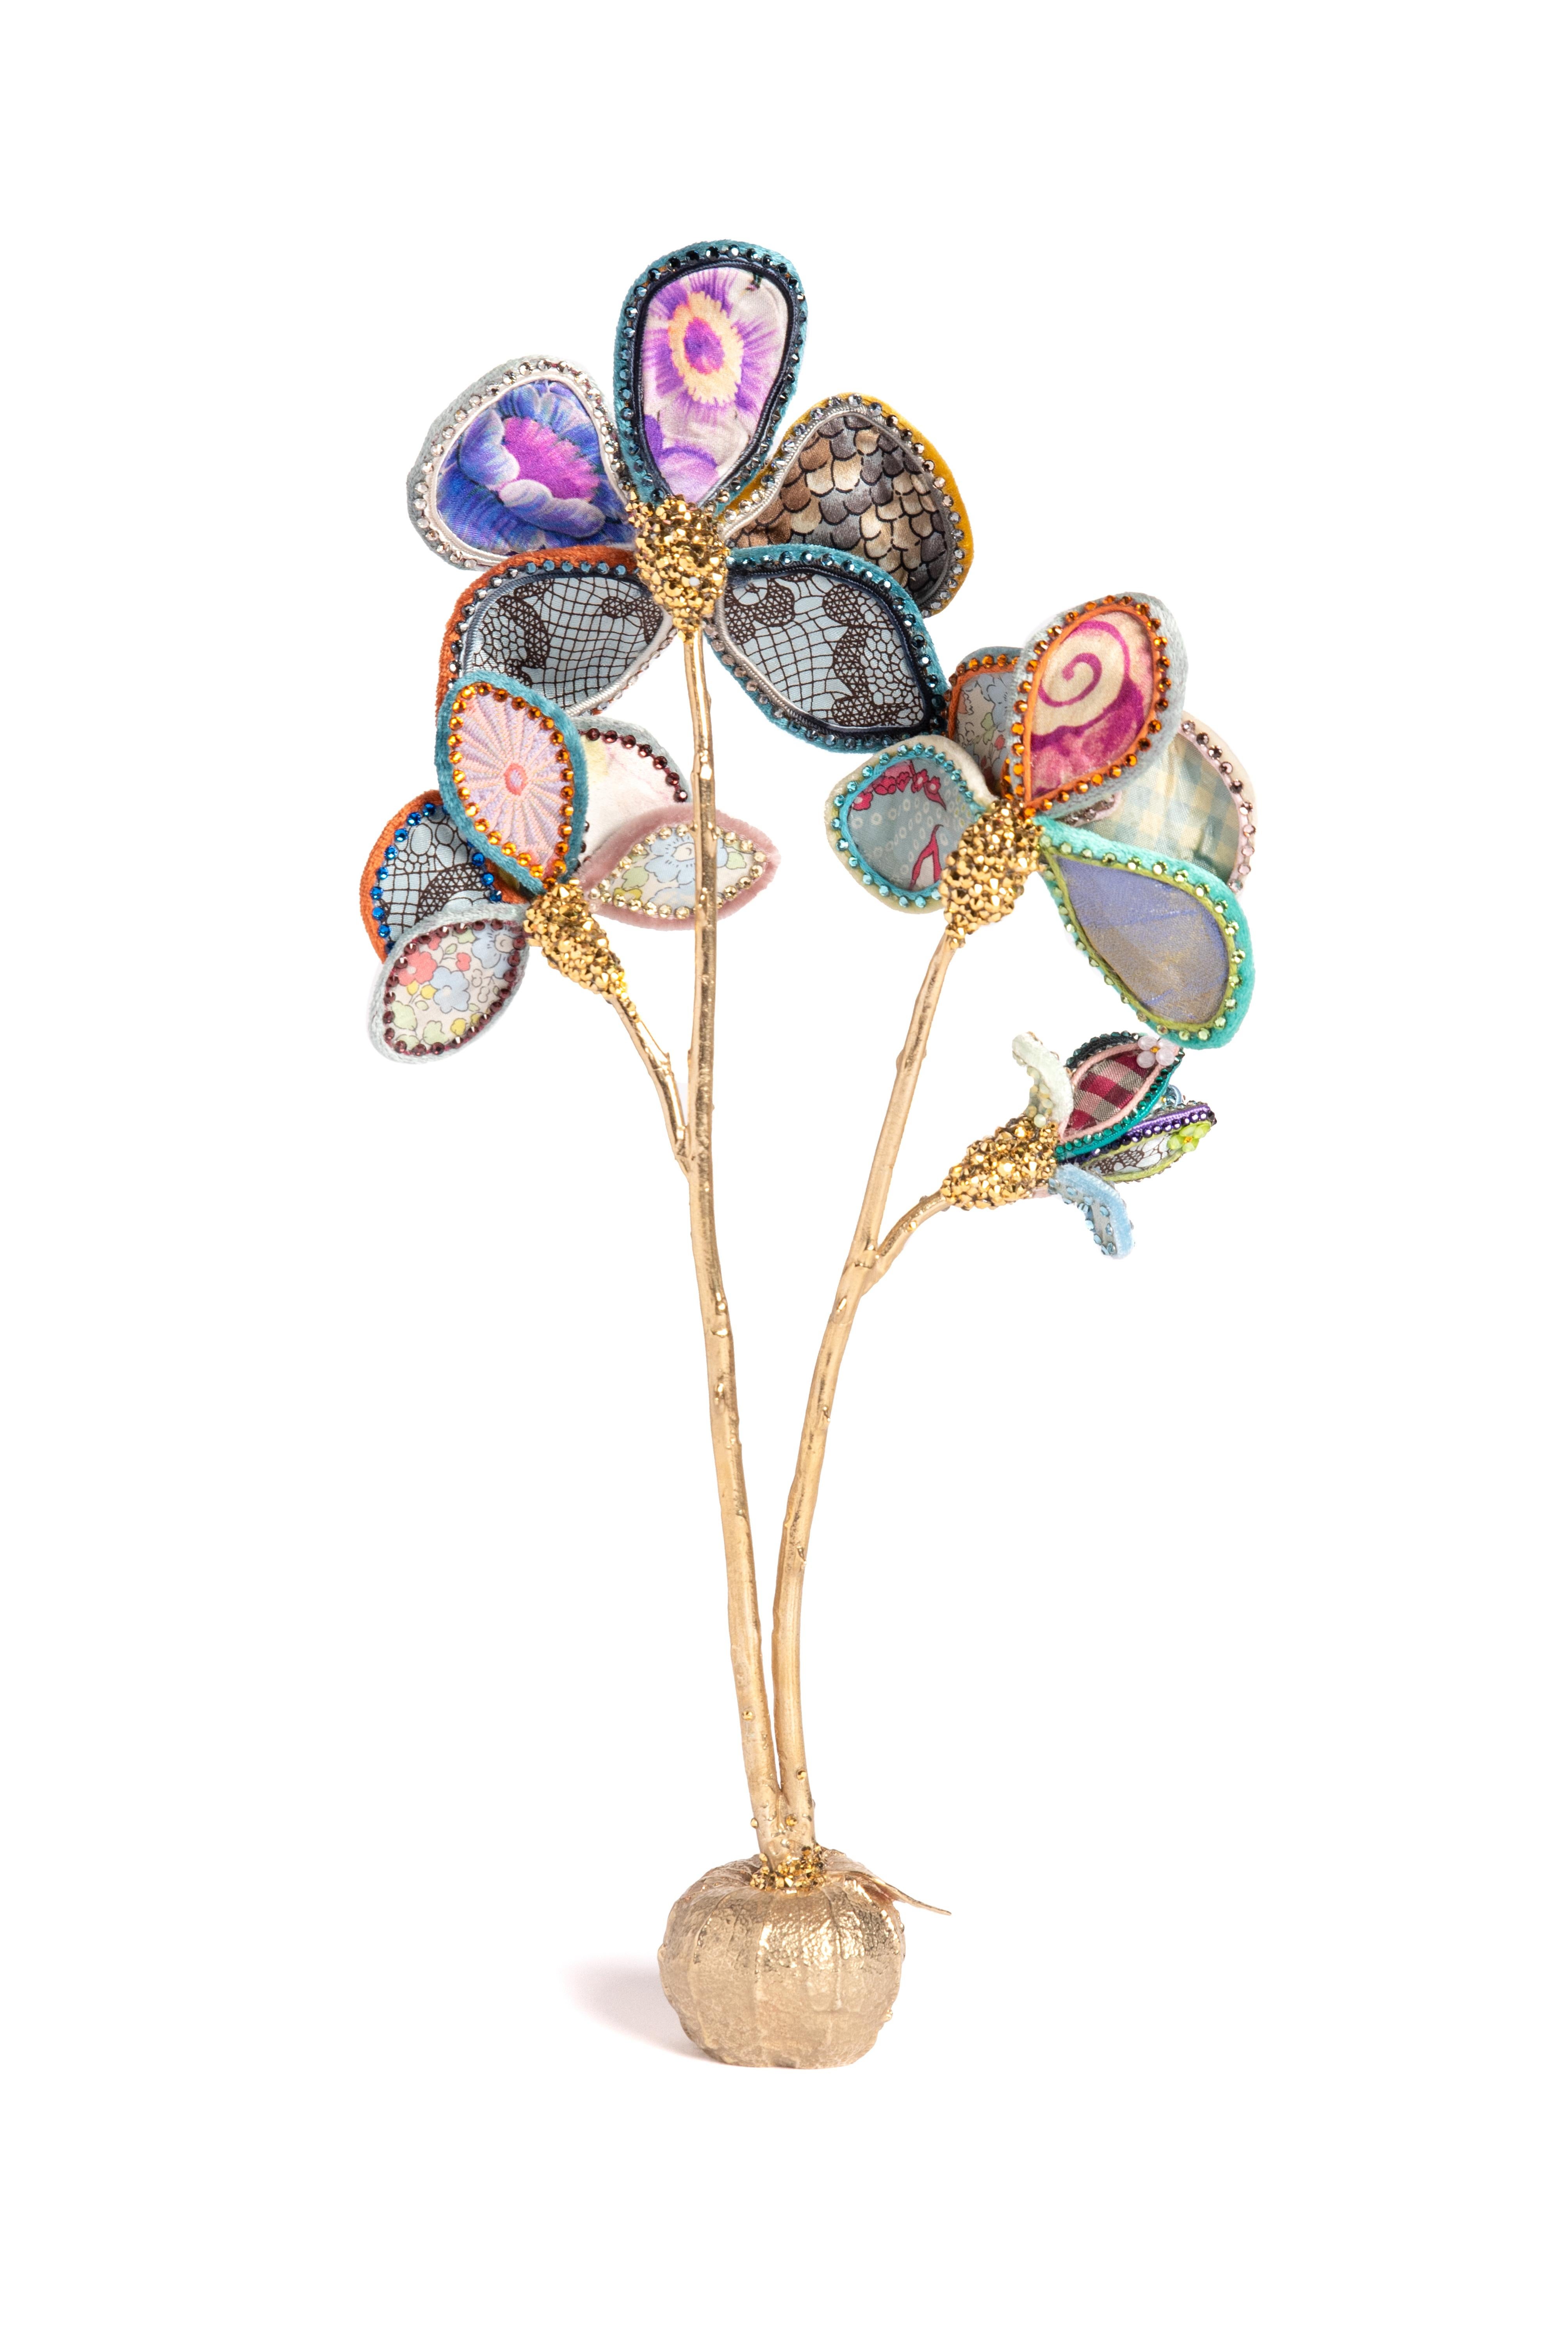 Blaugrau getönte Orchidee aus Seide und Samt, die auf einem zwiebelförmigen Messingfuß ruht. Geschmückt mit Vintage-Verzierungen, europäischen Kristallen und Vintage-Kunstblüten. Entworfen und handgefertigt in NYC.